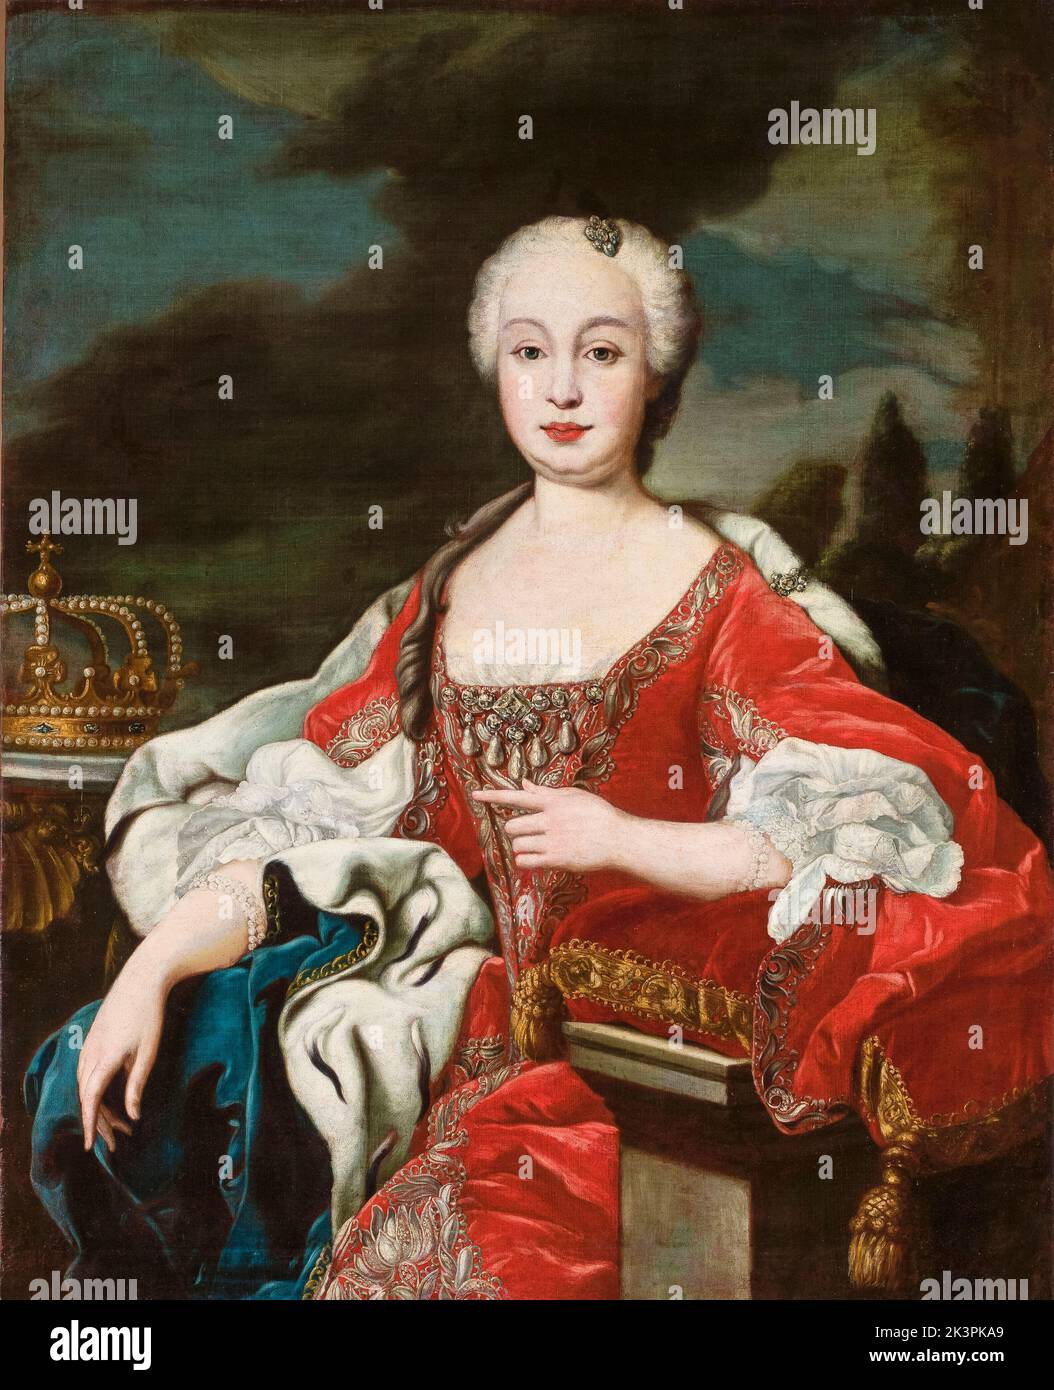 María Bárbara de Braganza, (1711-1758), Reine Consort d'Espagne, portrait peint à l'huile sur toile par un artiste inconnu, vers 1746 Banque D'Images